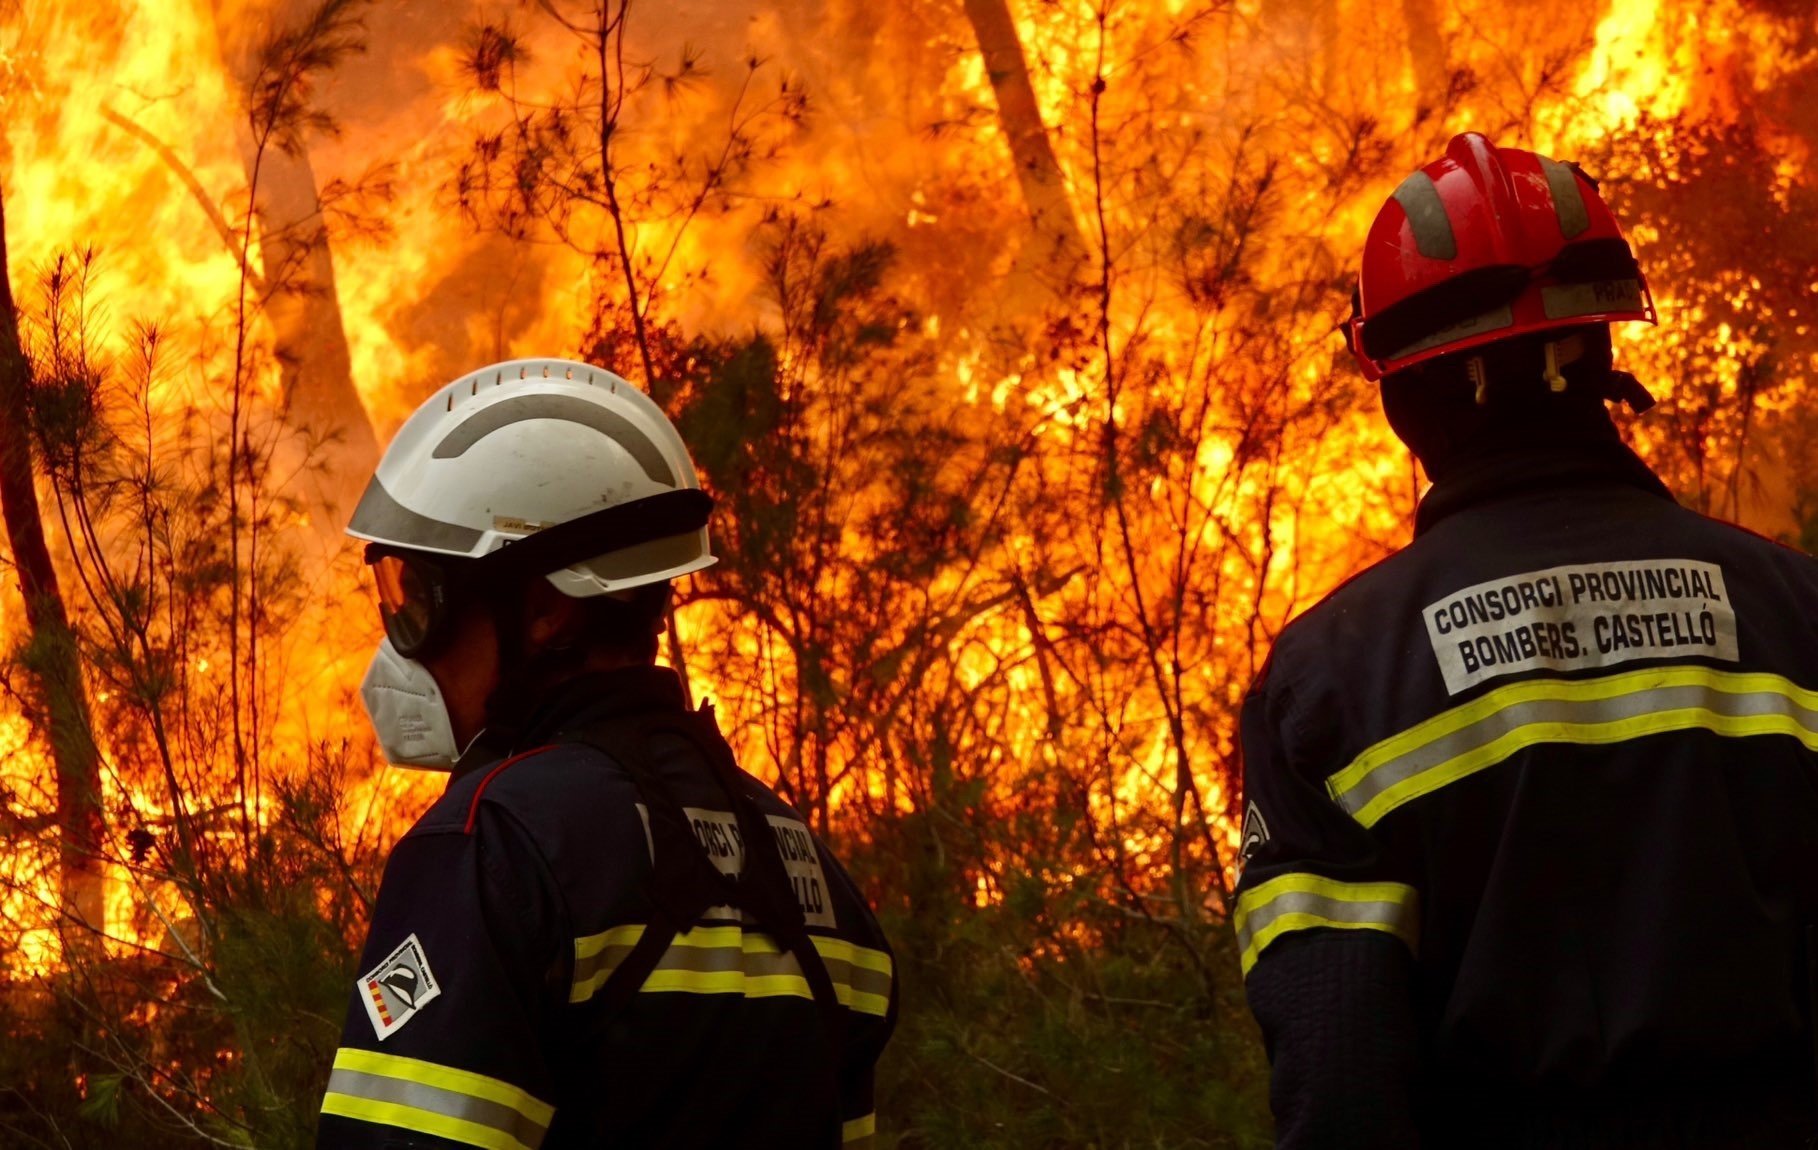 El fort vent revifa el gran incendi forestal de Castelló i Terol: obliga a desallotjar tres pobles més